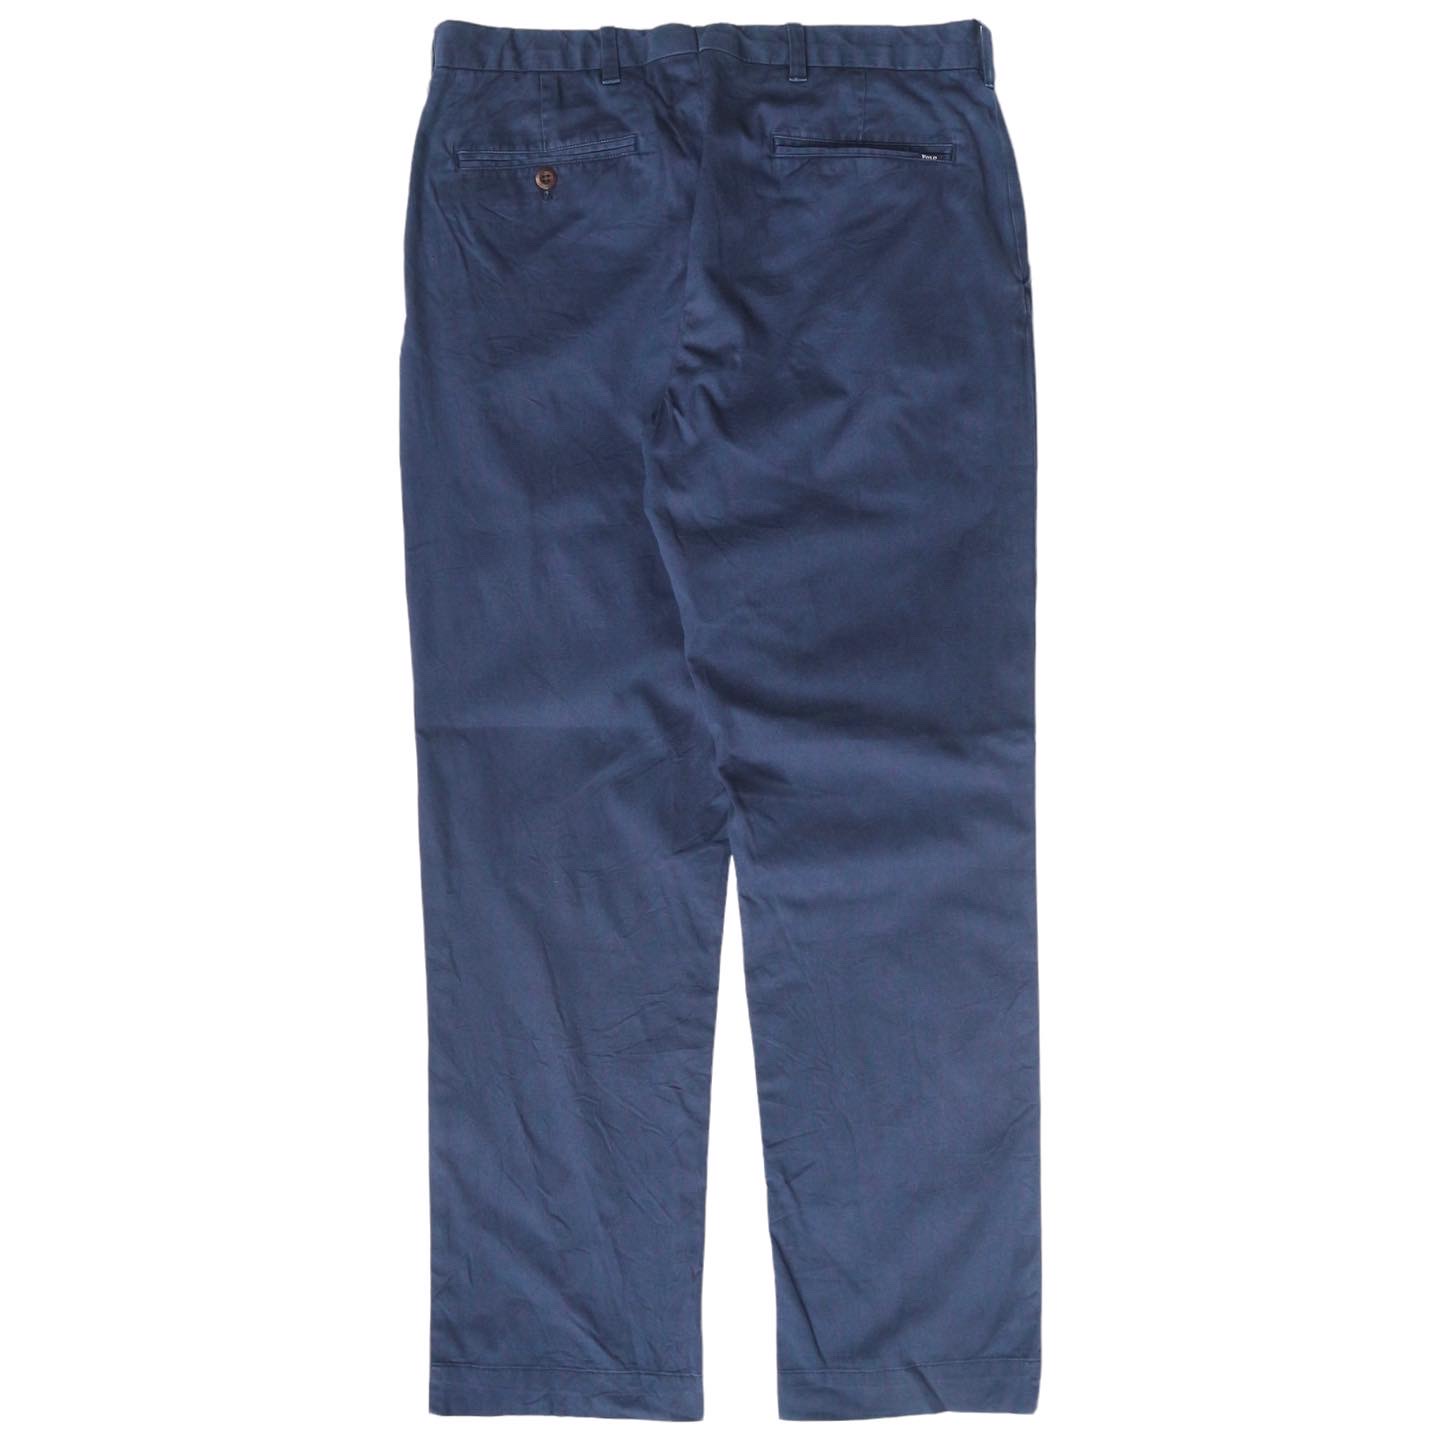 Polo by Ralph Lauren Khaki Pants Size 31